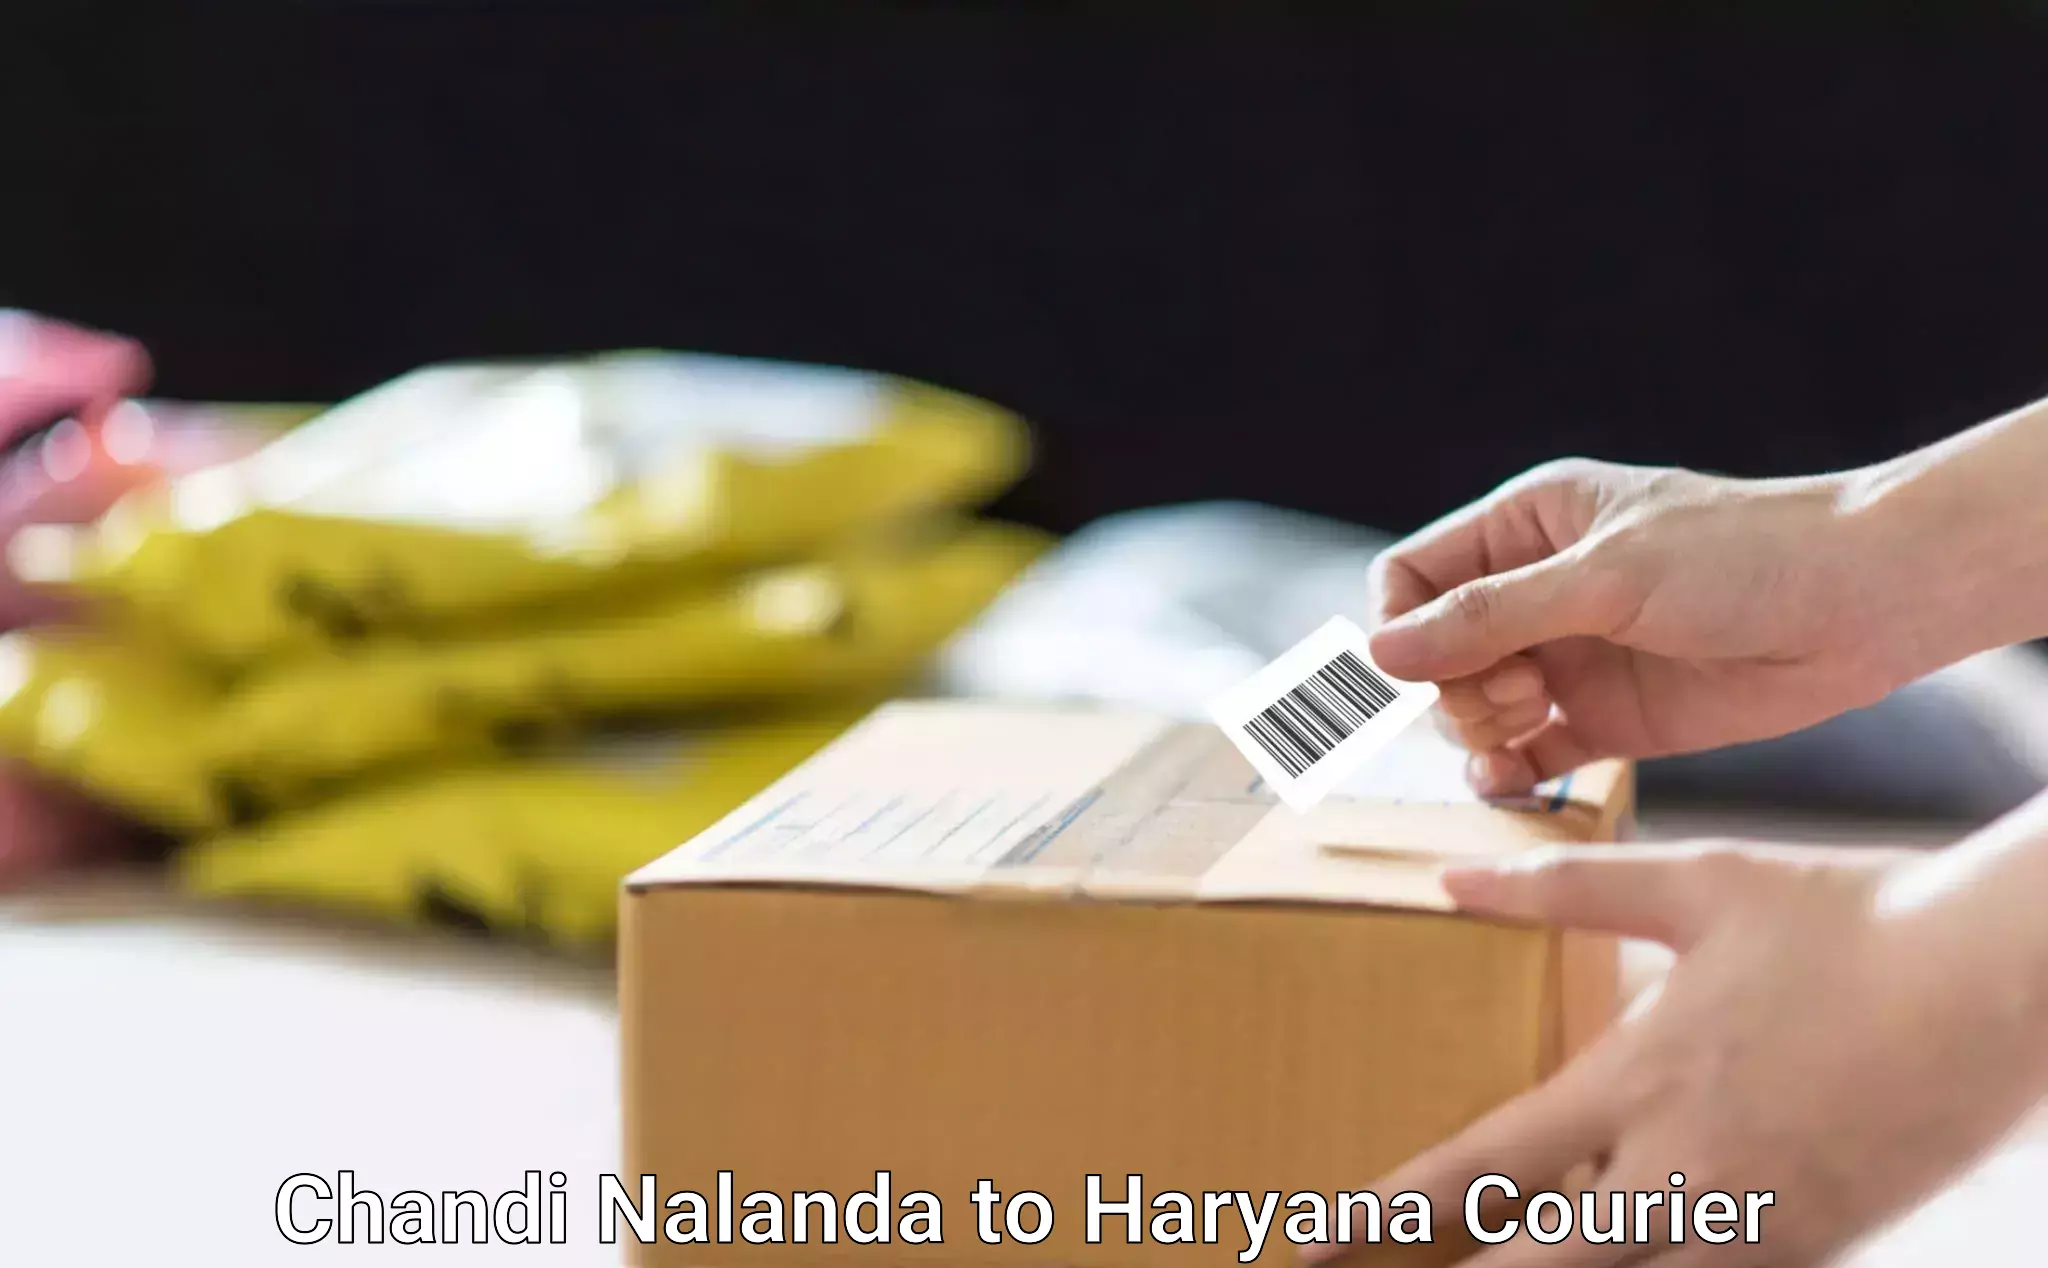 Furniture transport company Chandi Nalanda to Bhiwani